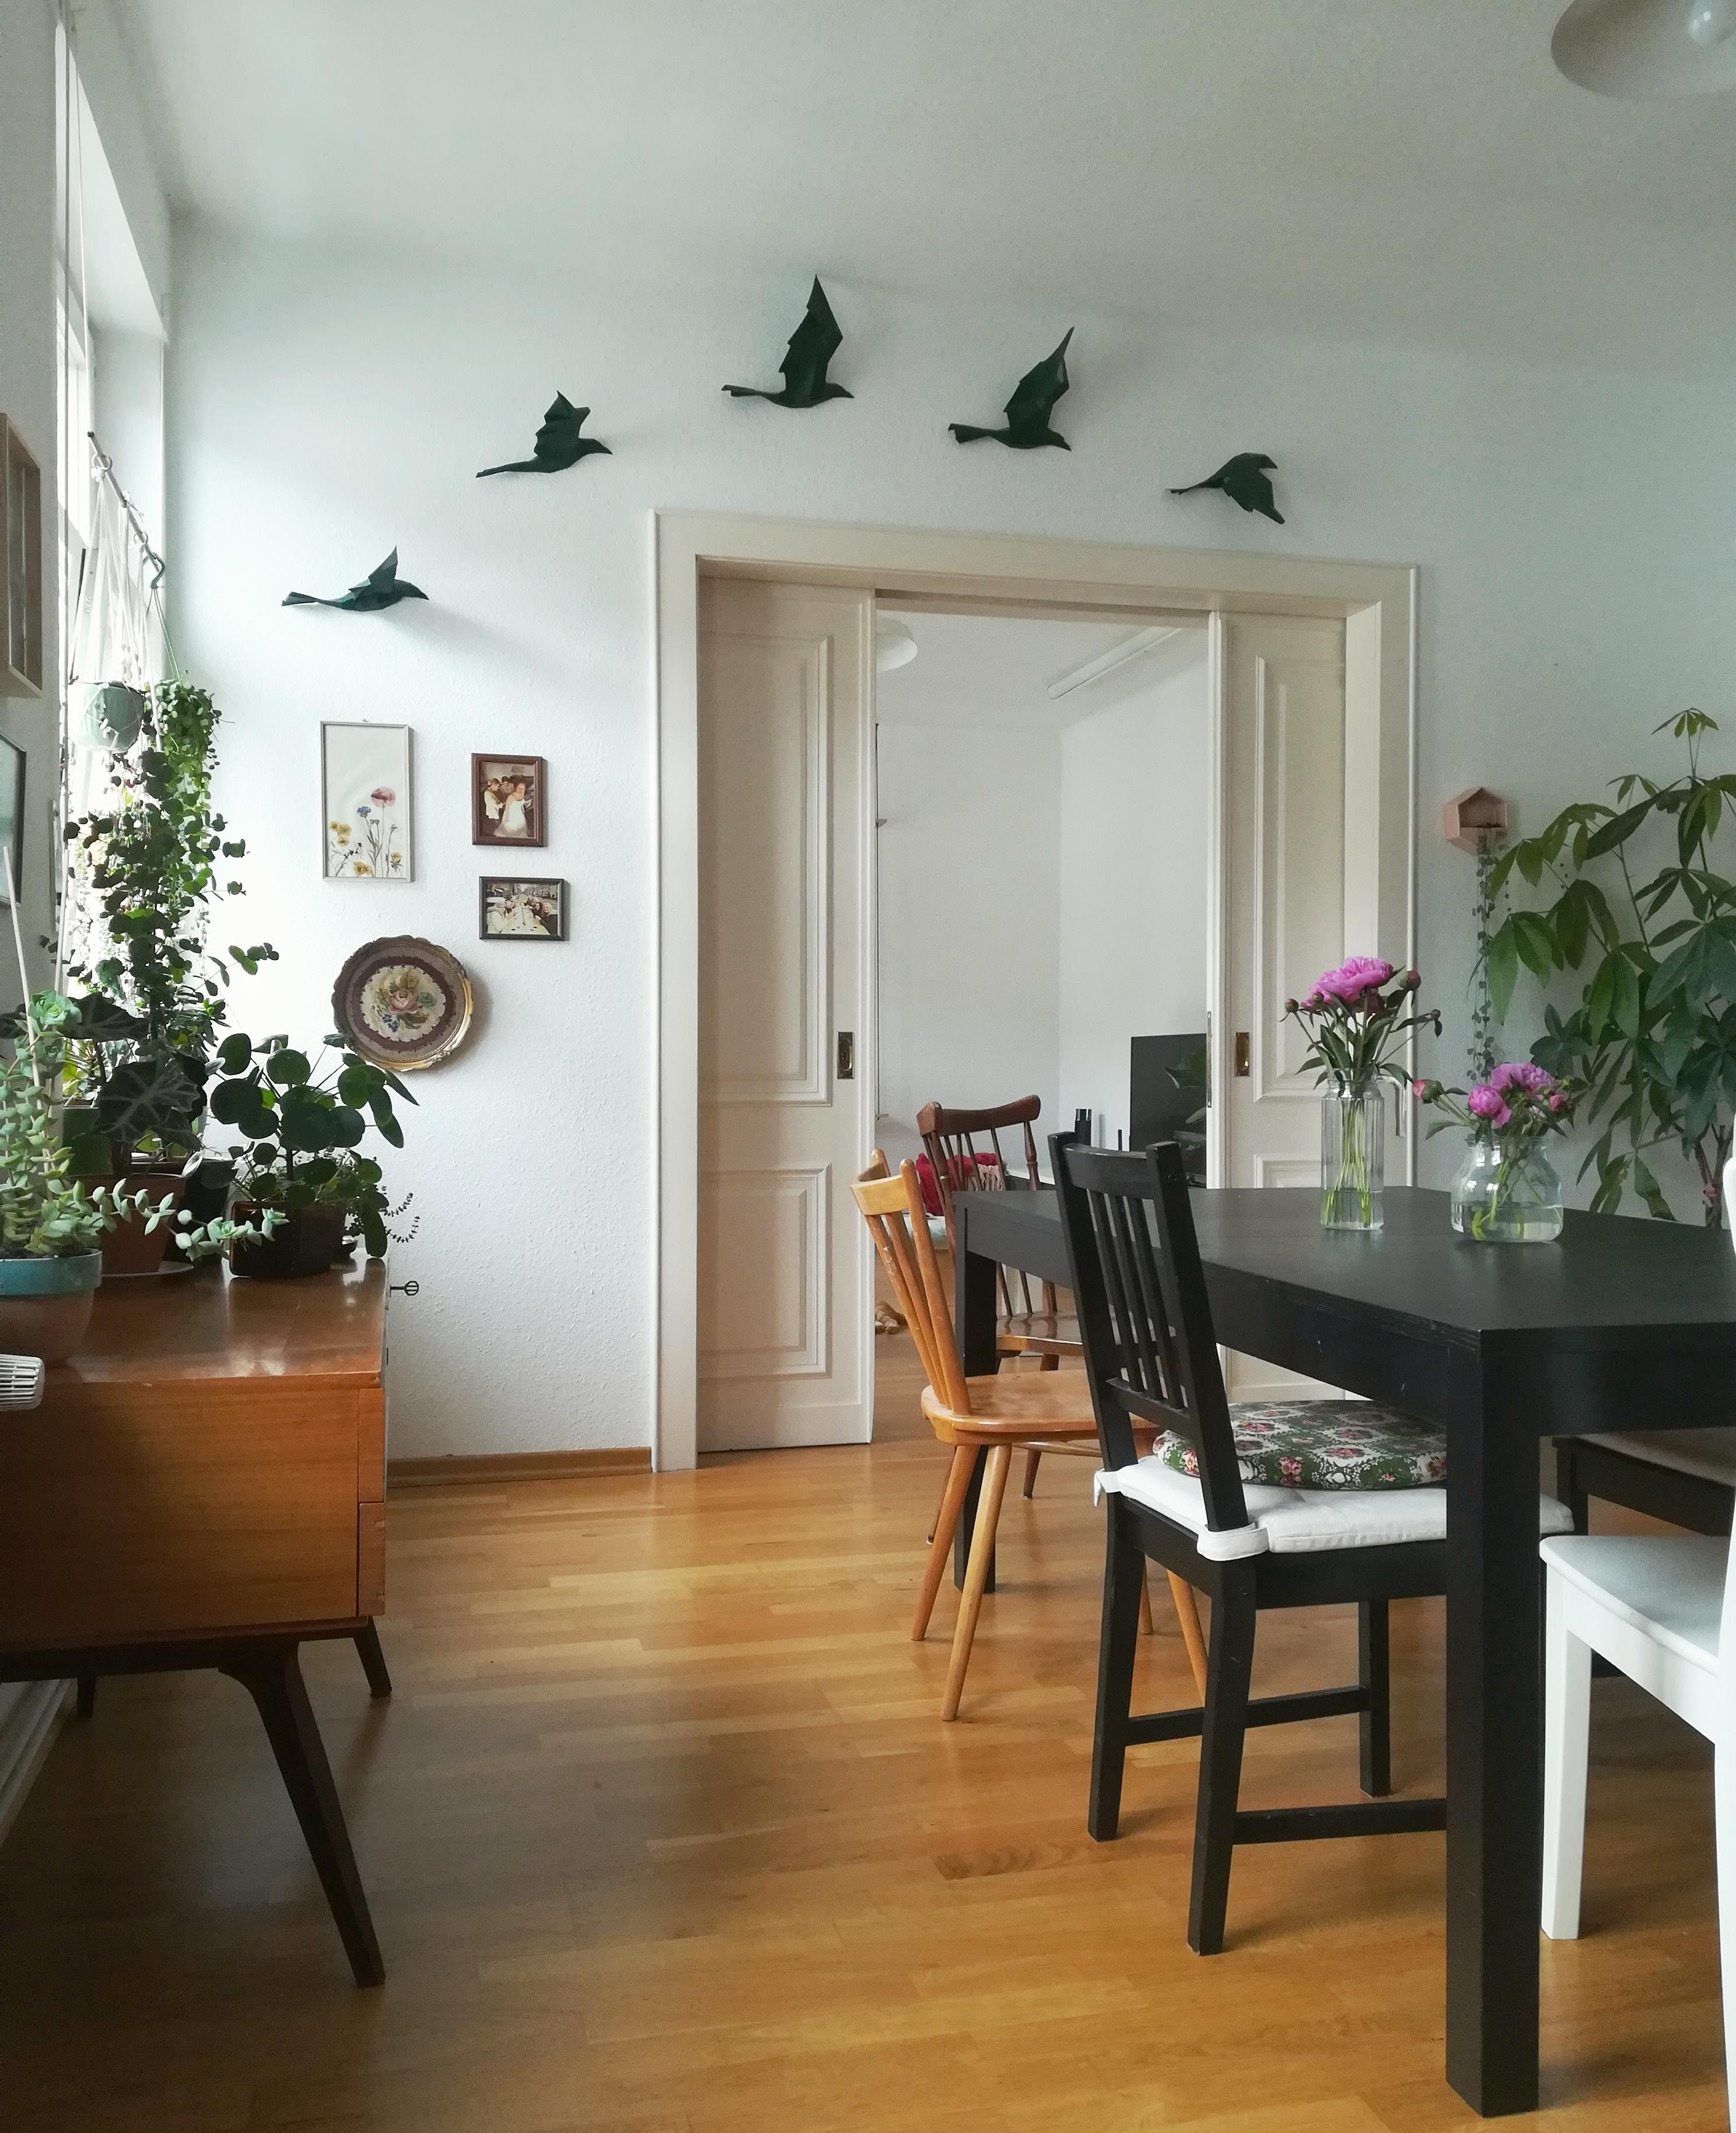 #vogelflug #livingroom #wohnzimmer #wohnen #pflanzenliebe #cat #katze #inspiration 